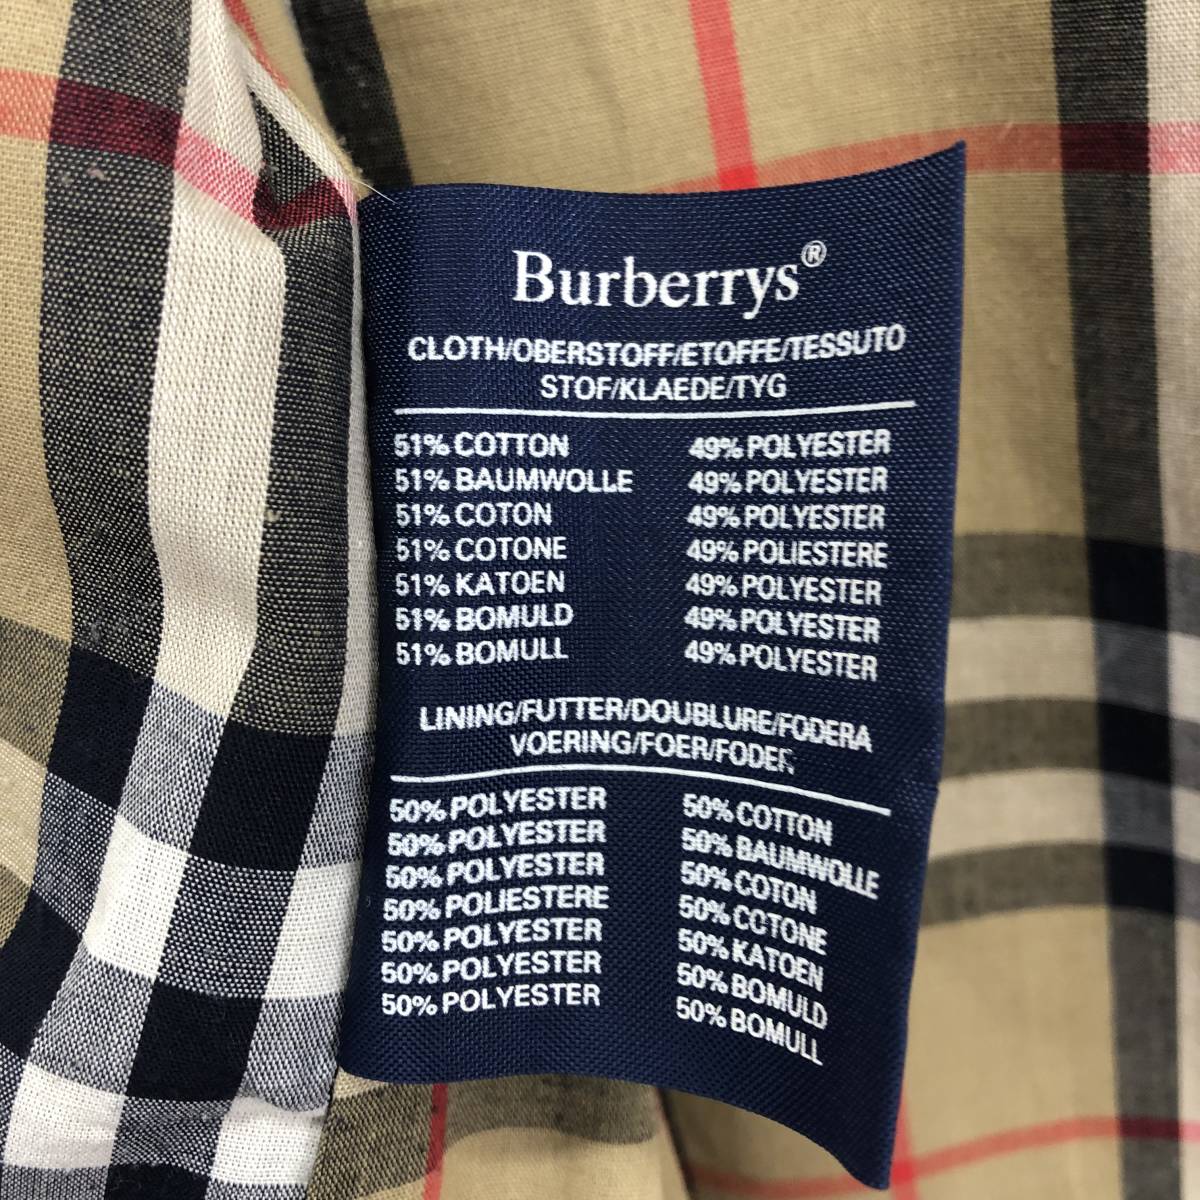 Burberry's バーバリーズ ブロード ステンカラーコート Vintage